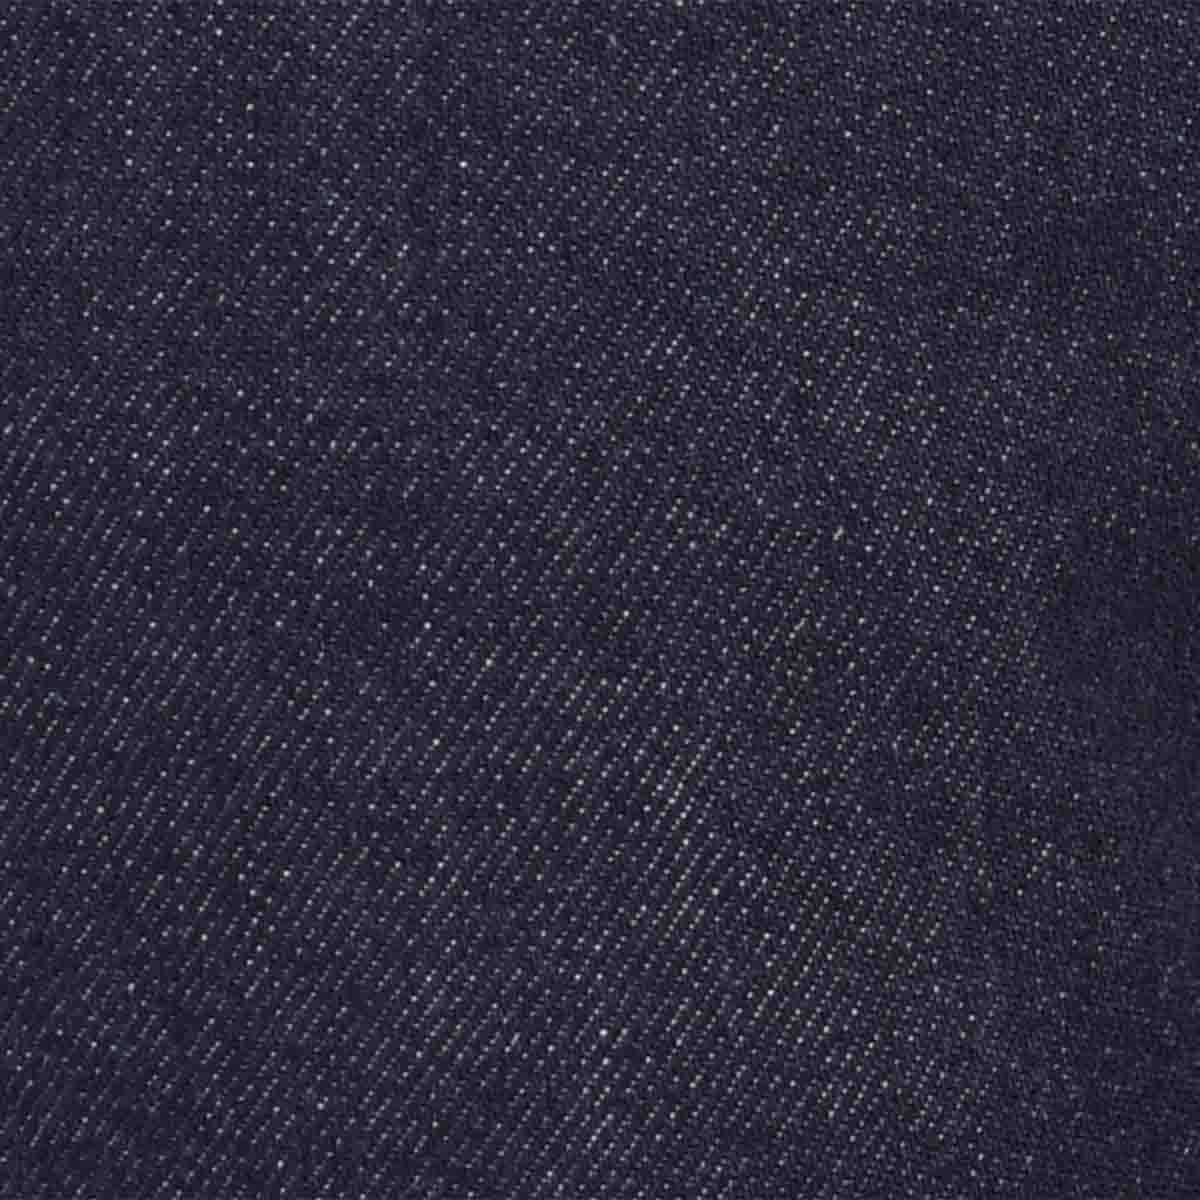 Jeans Azul Obscuro Corte Rescto Polo Club para Caballero